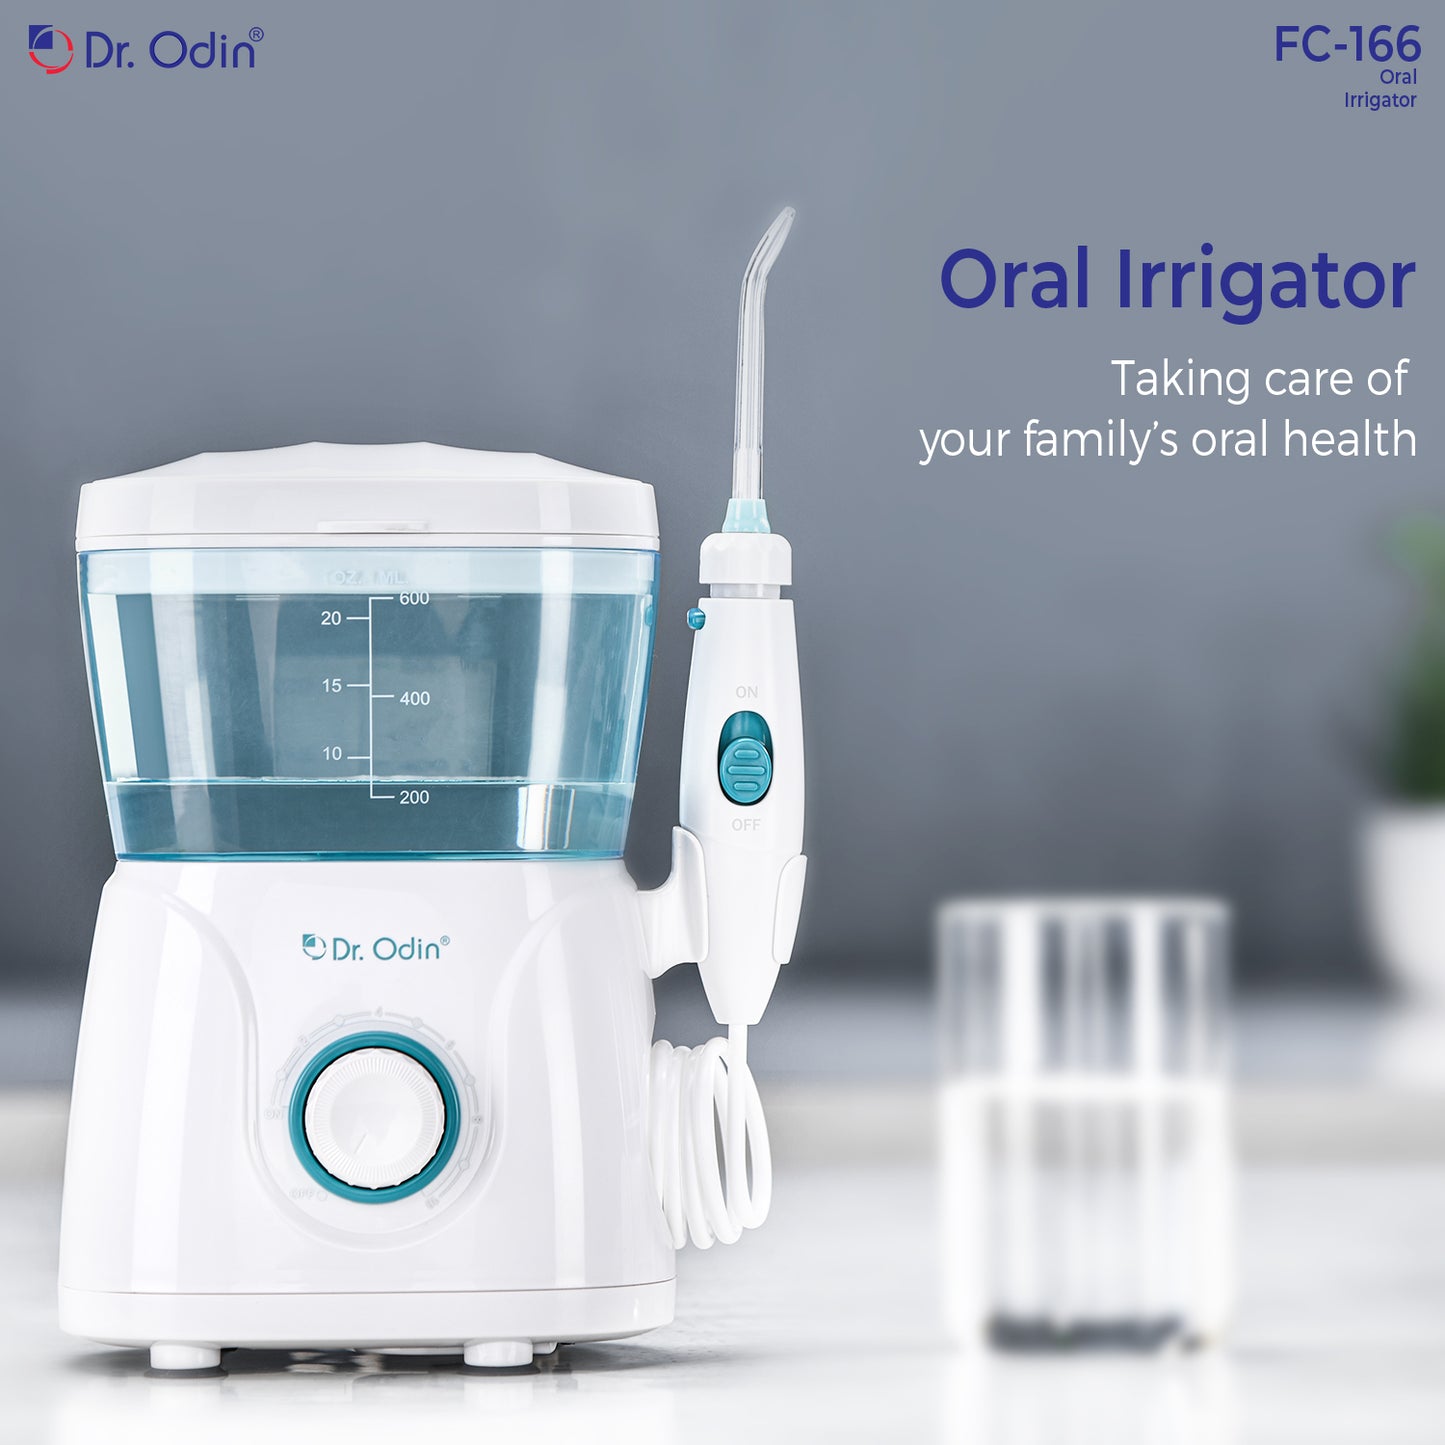 Oral Irrigator FC-166